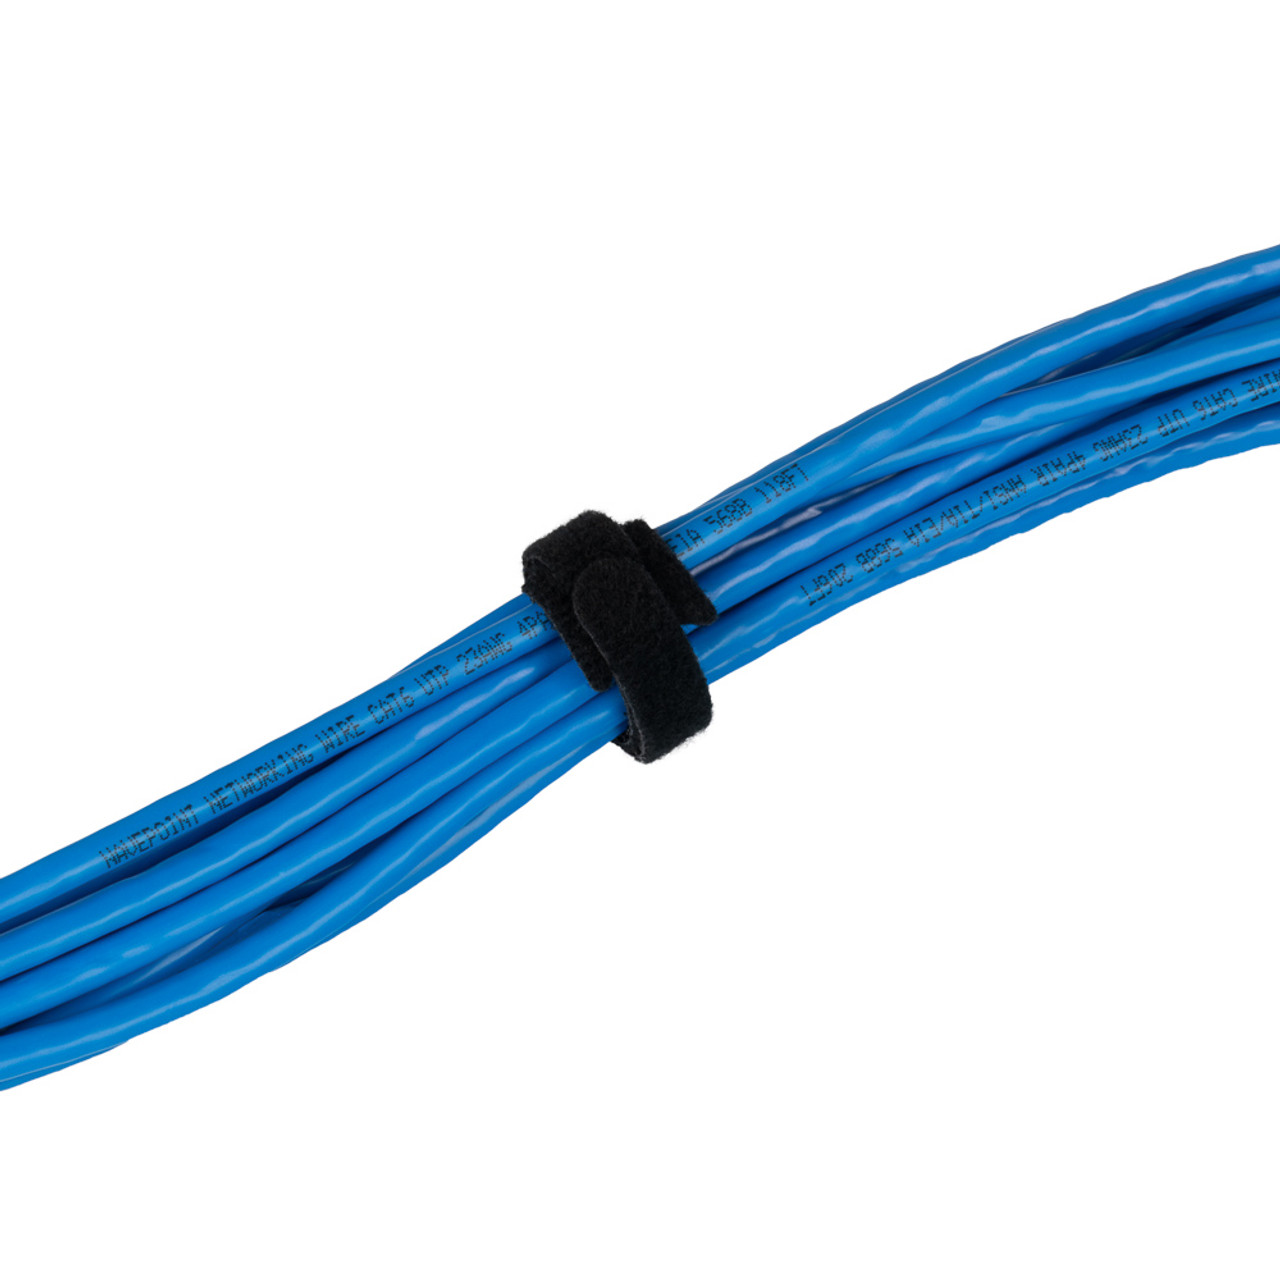 NavePoint 10 Inch Hook and Loop Cable Ties Black - 25 Pack